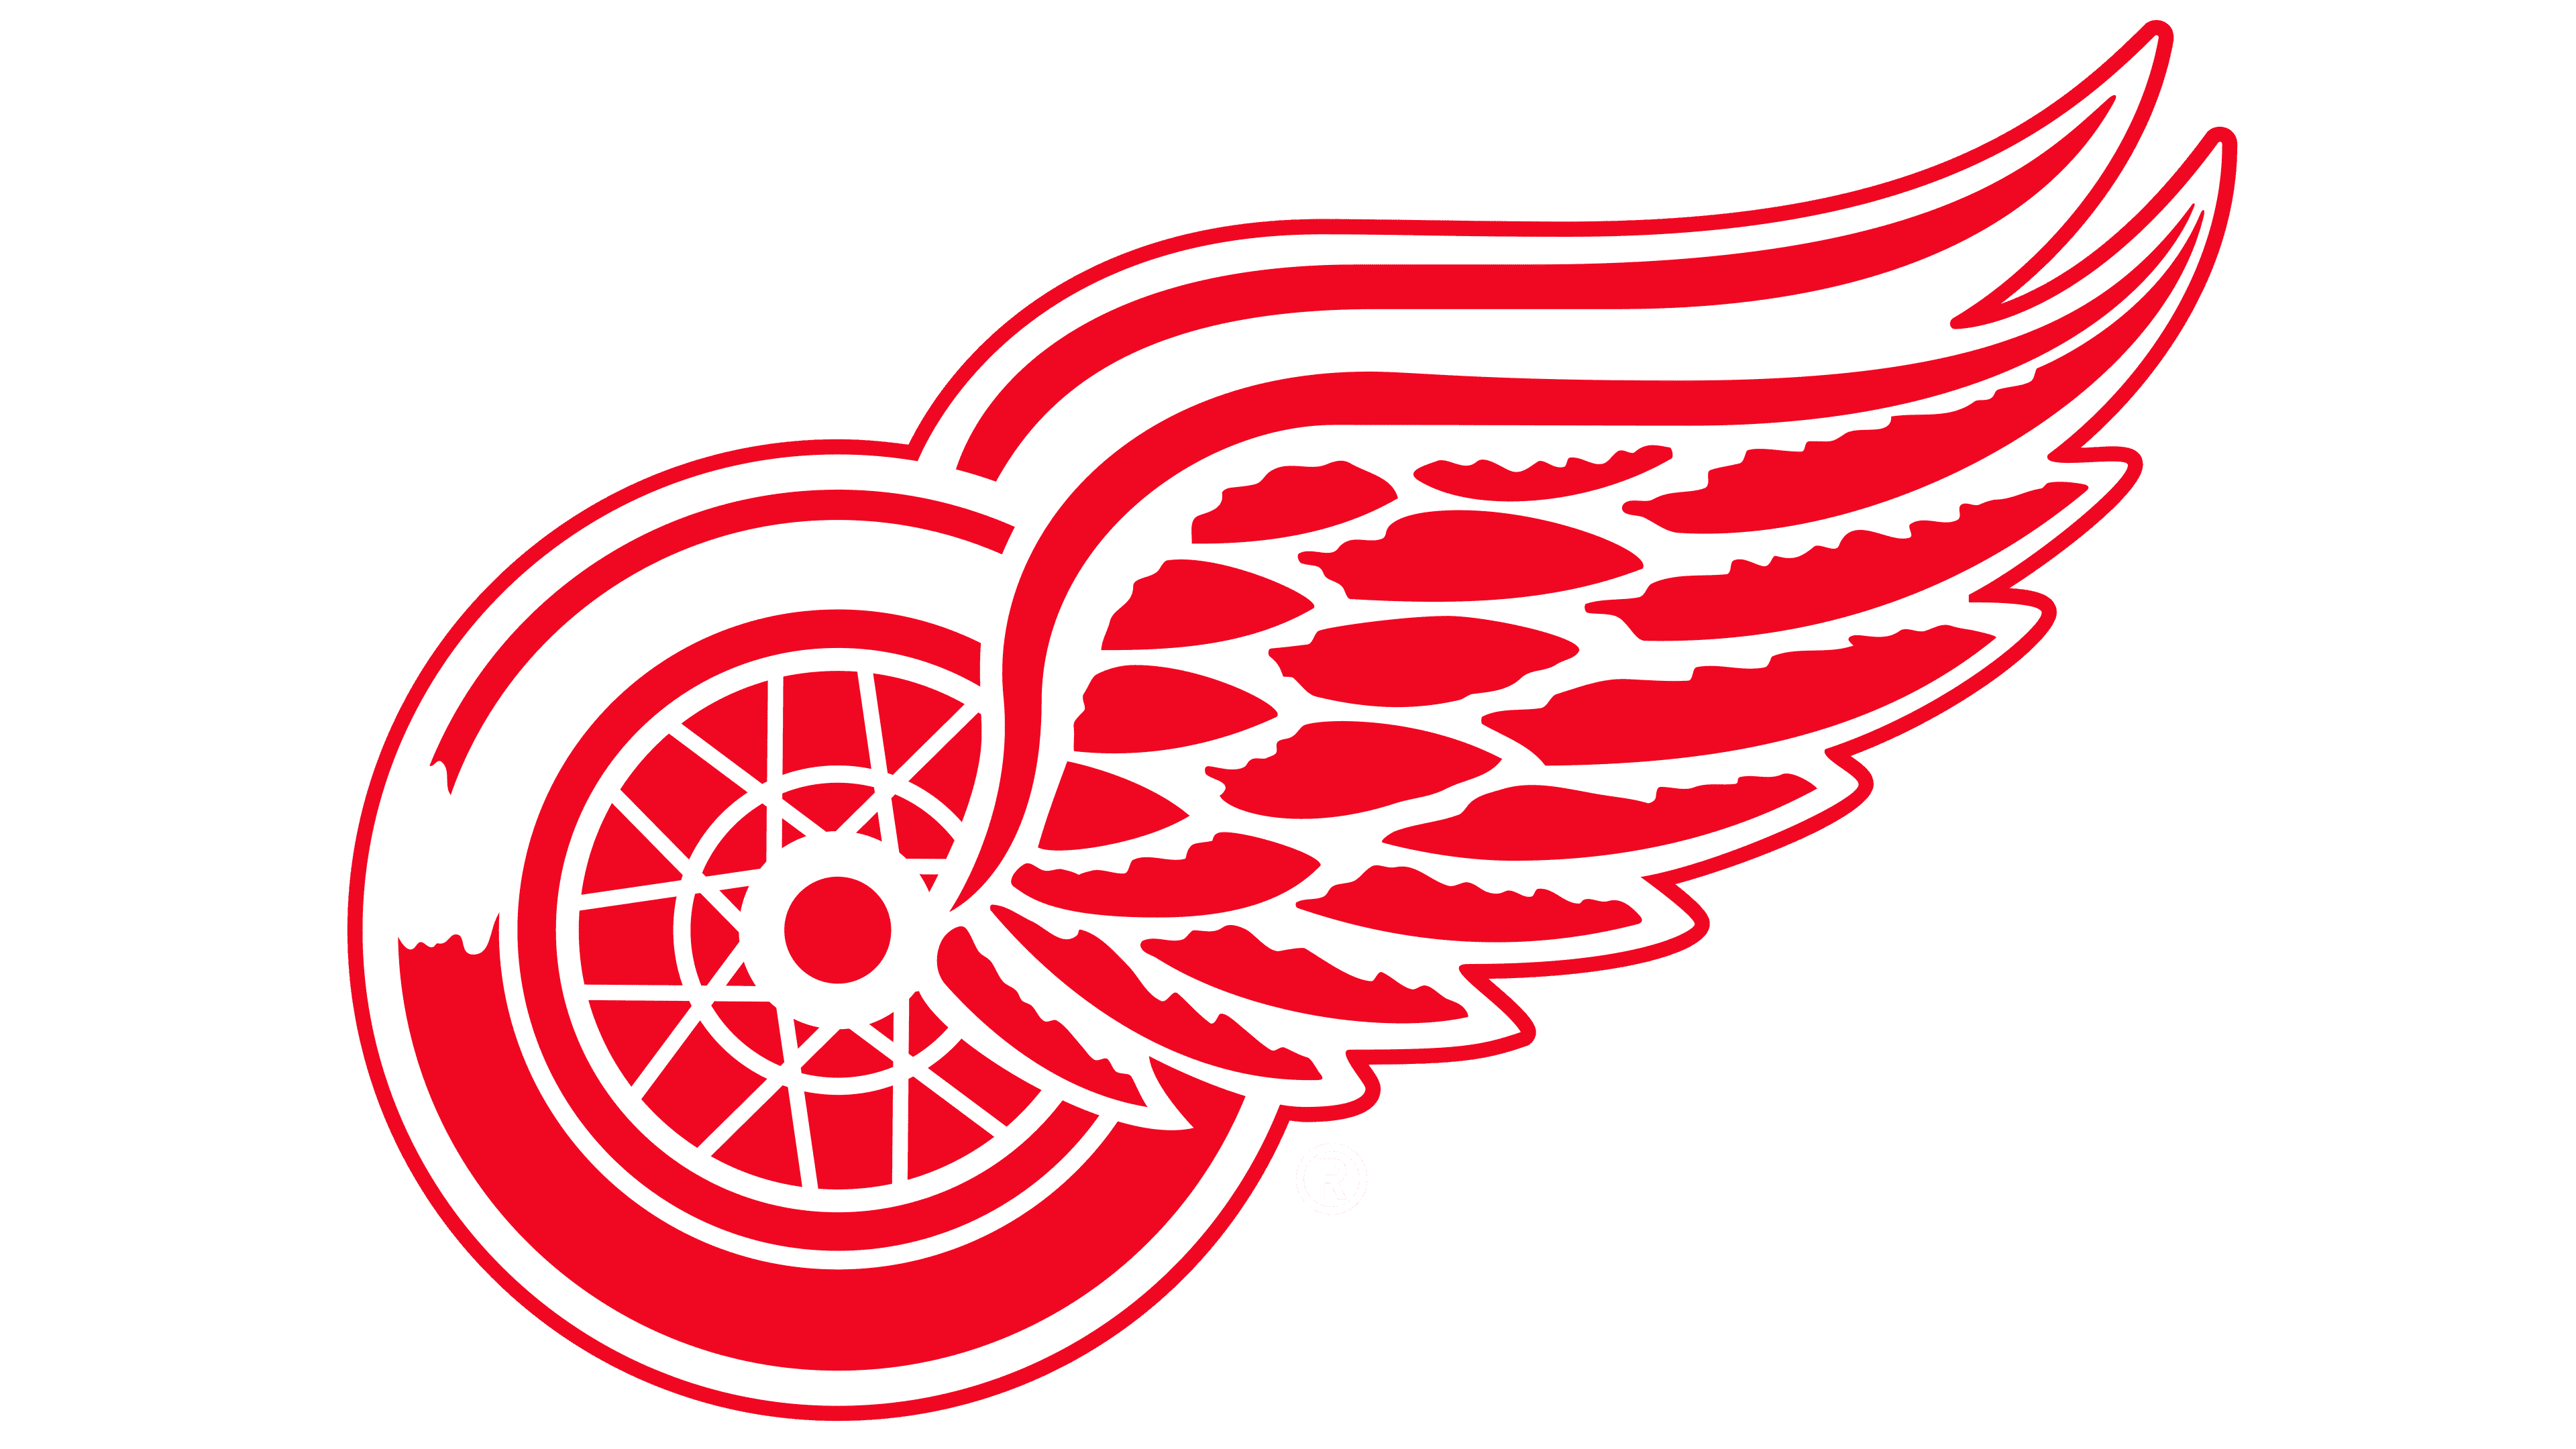 Detroit Red Wings Logo - Storia e significato dell'emblema del marchio...